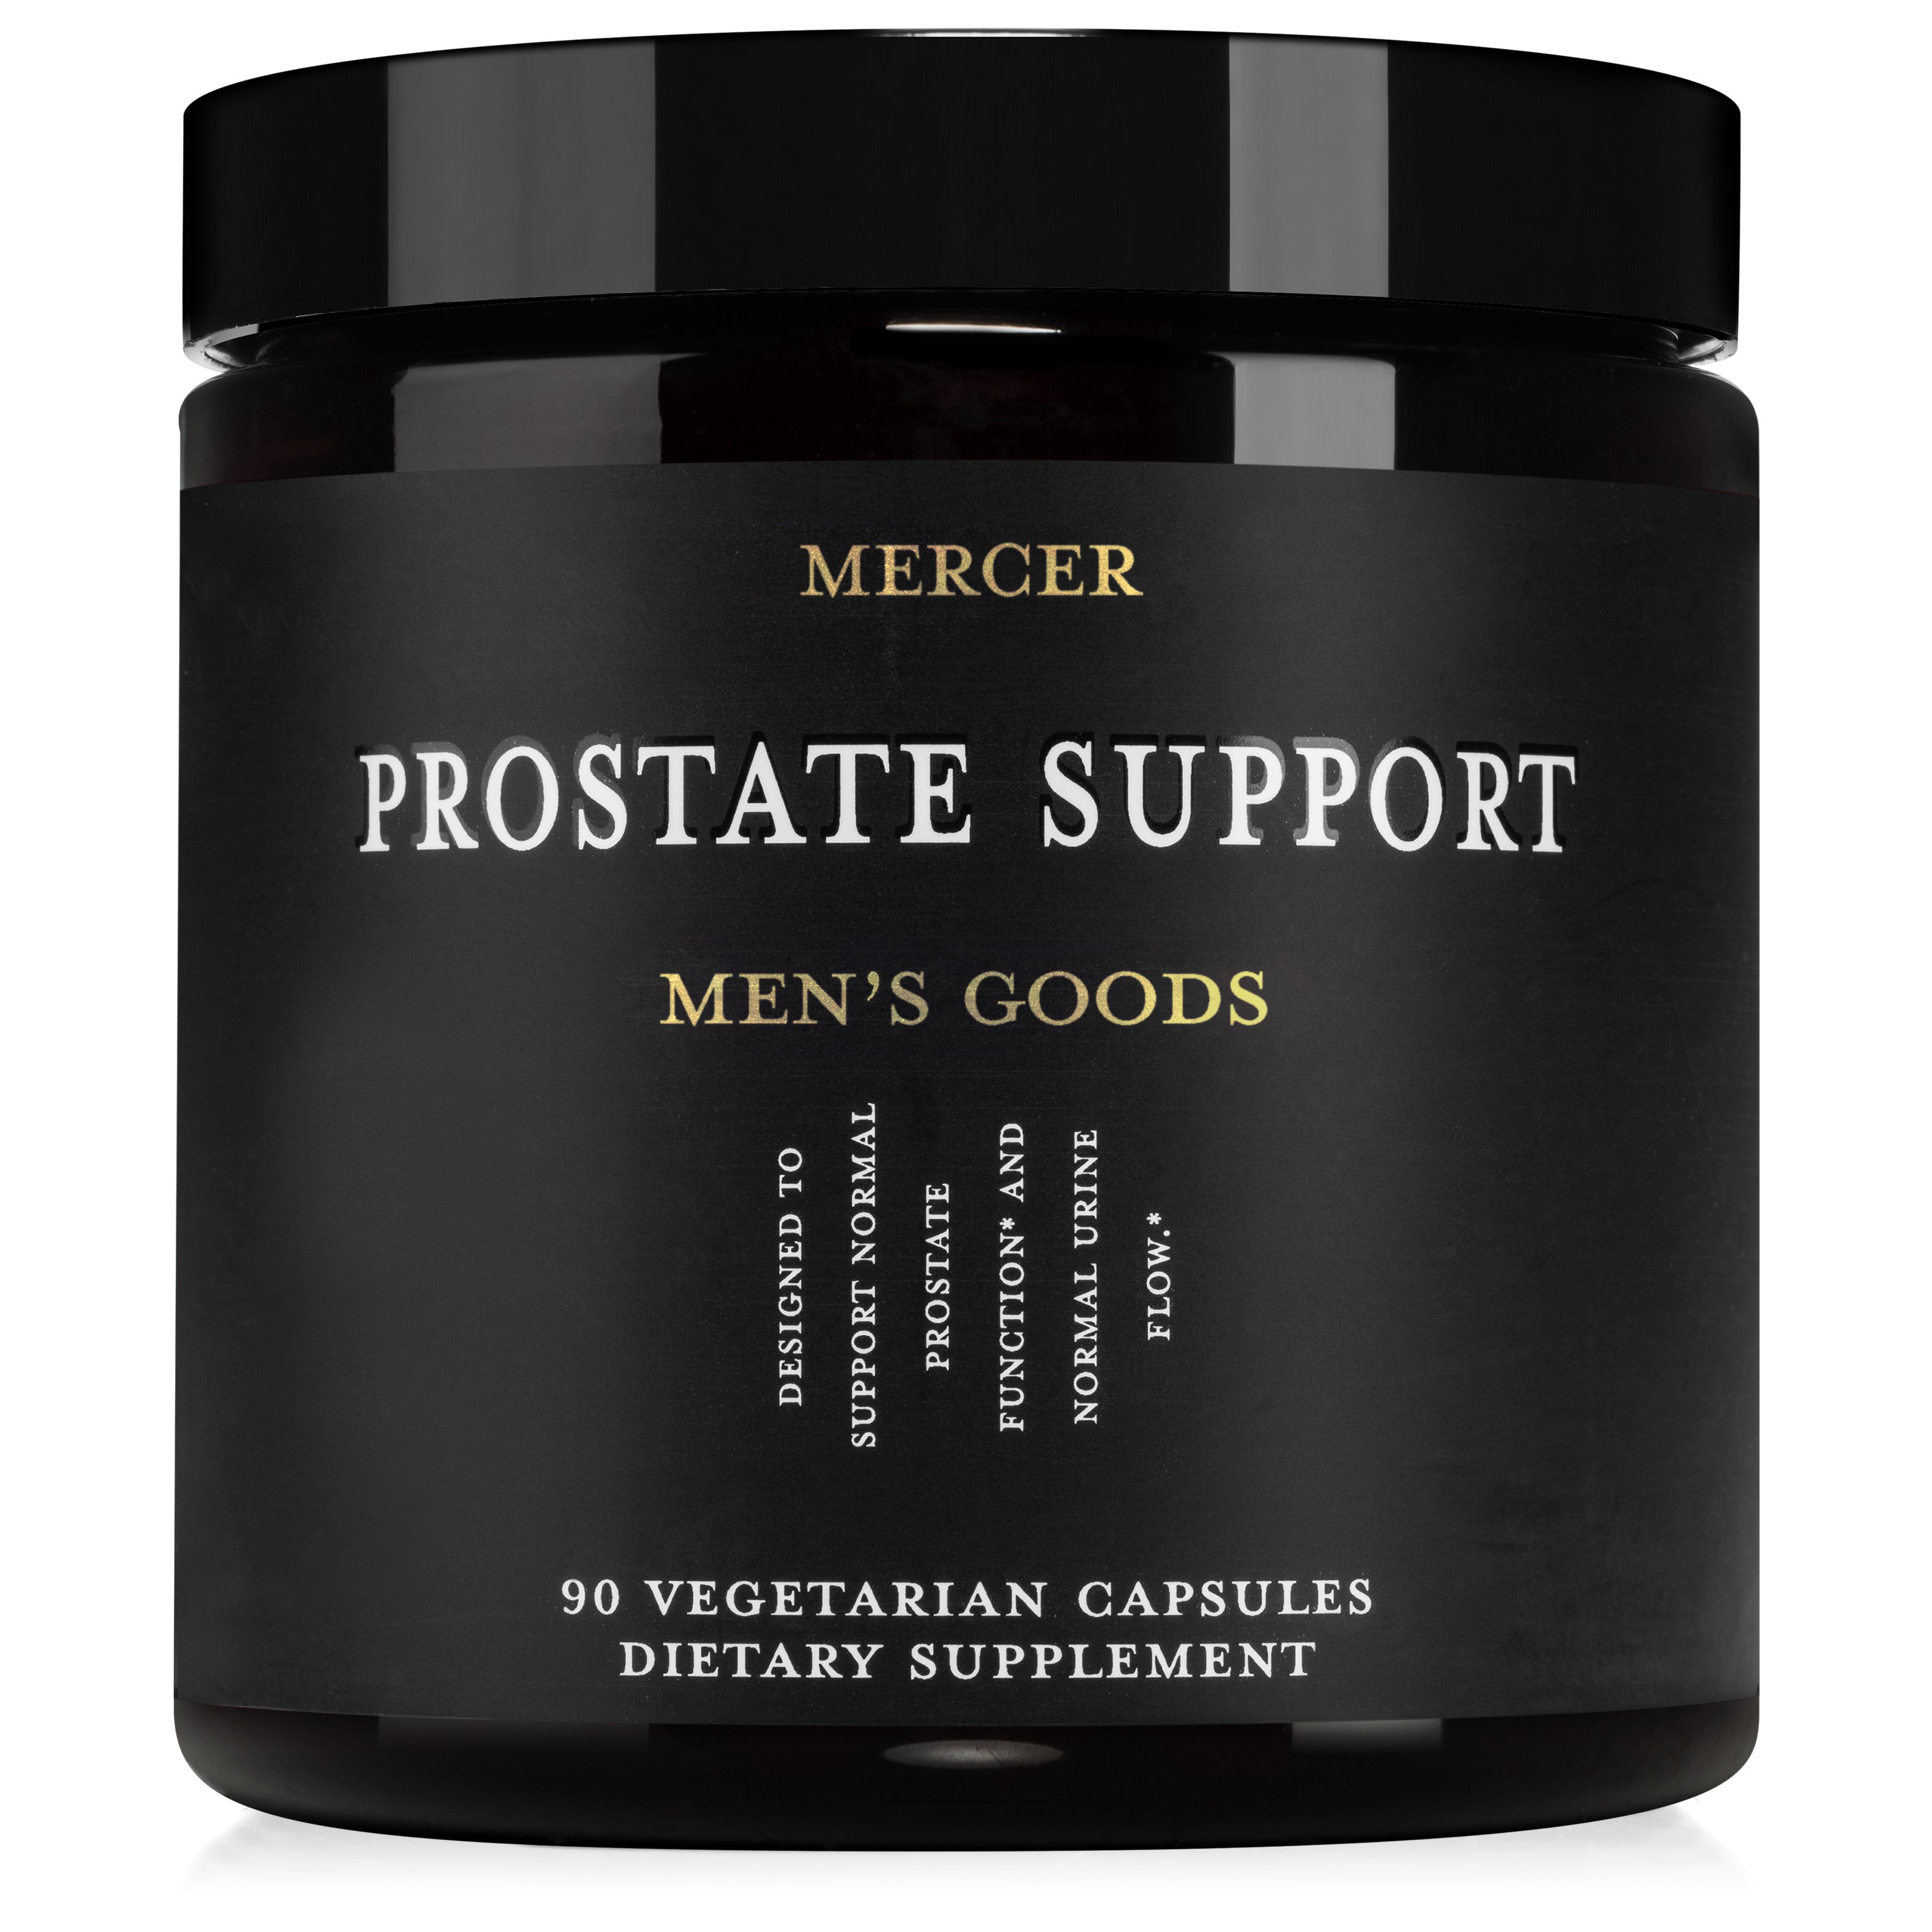 Mercer Prostate Support